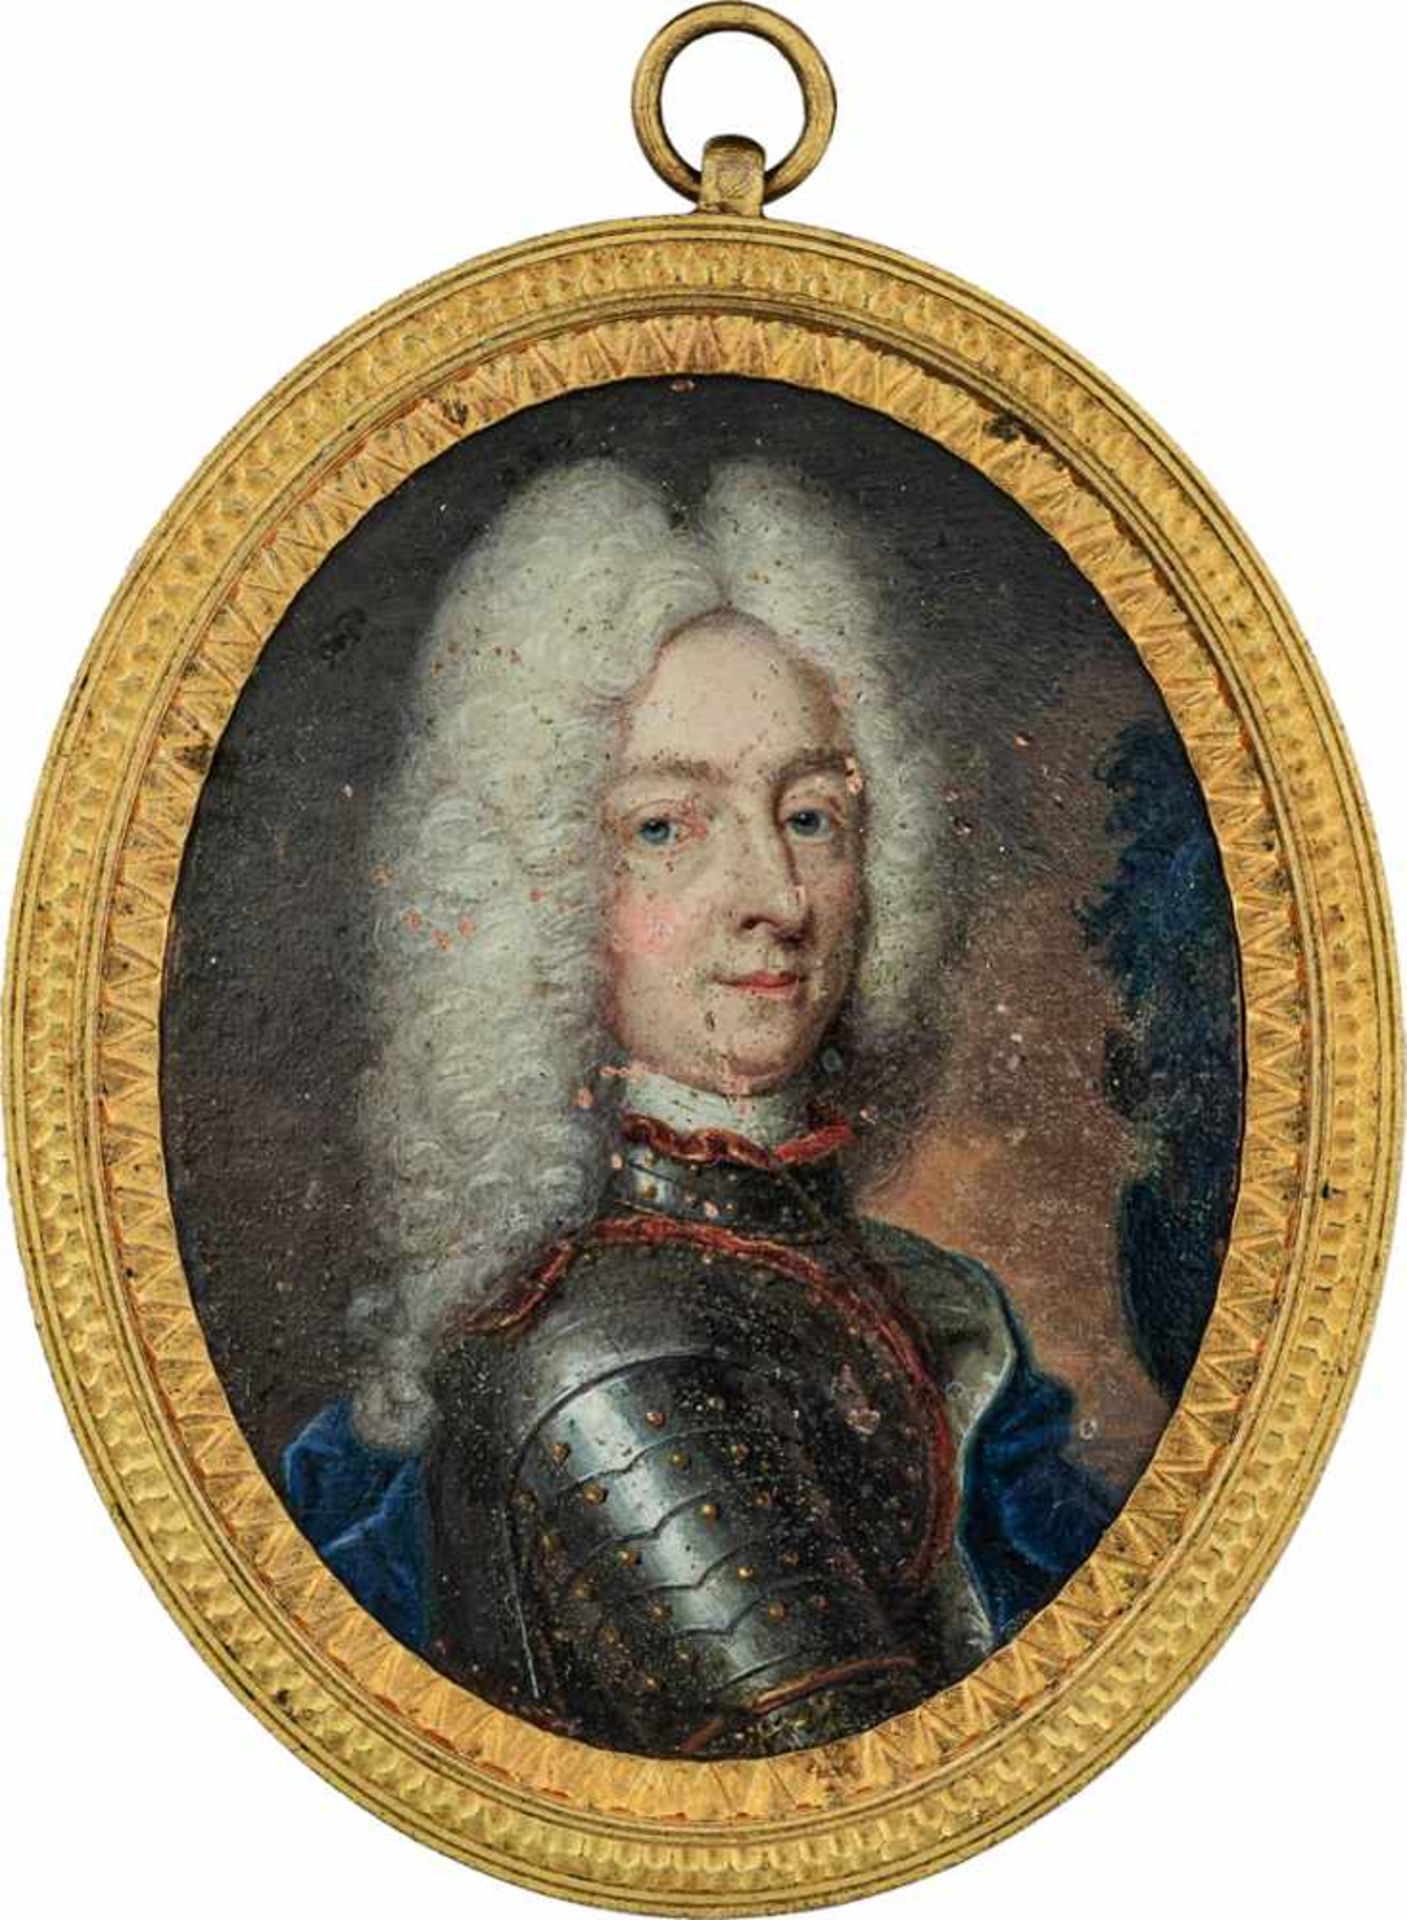 Europäisch: um 1710/1720. Miniatur Portrait eines Mannes mit langer weiß gepuderter Perücke in